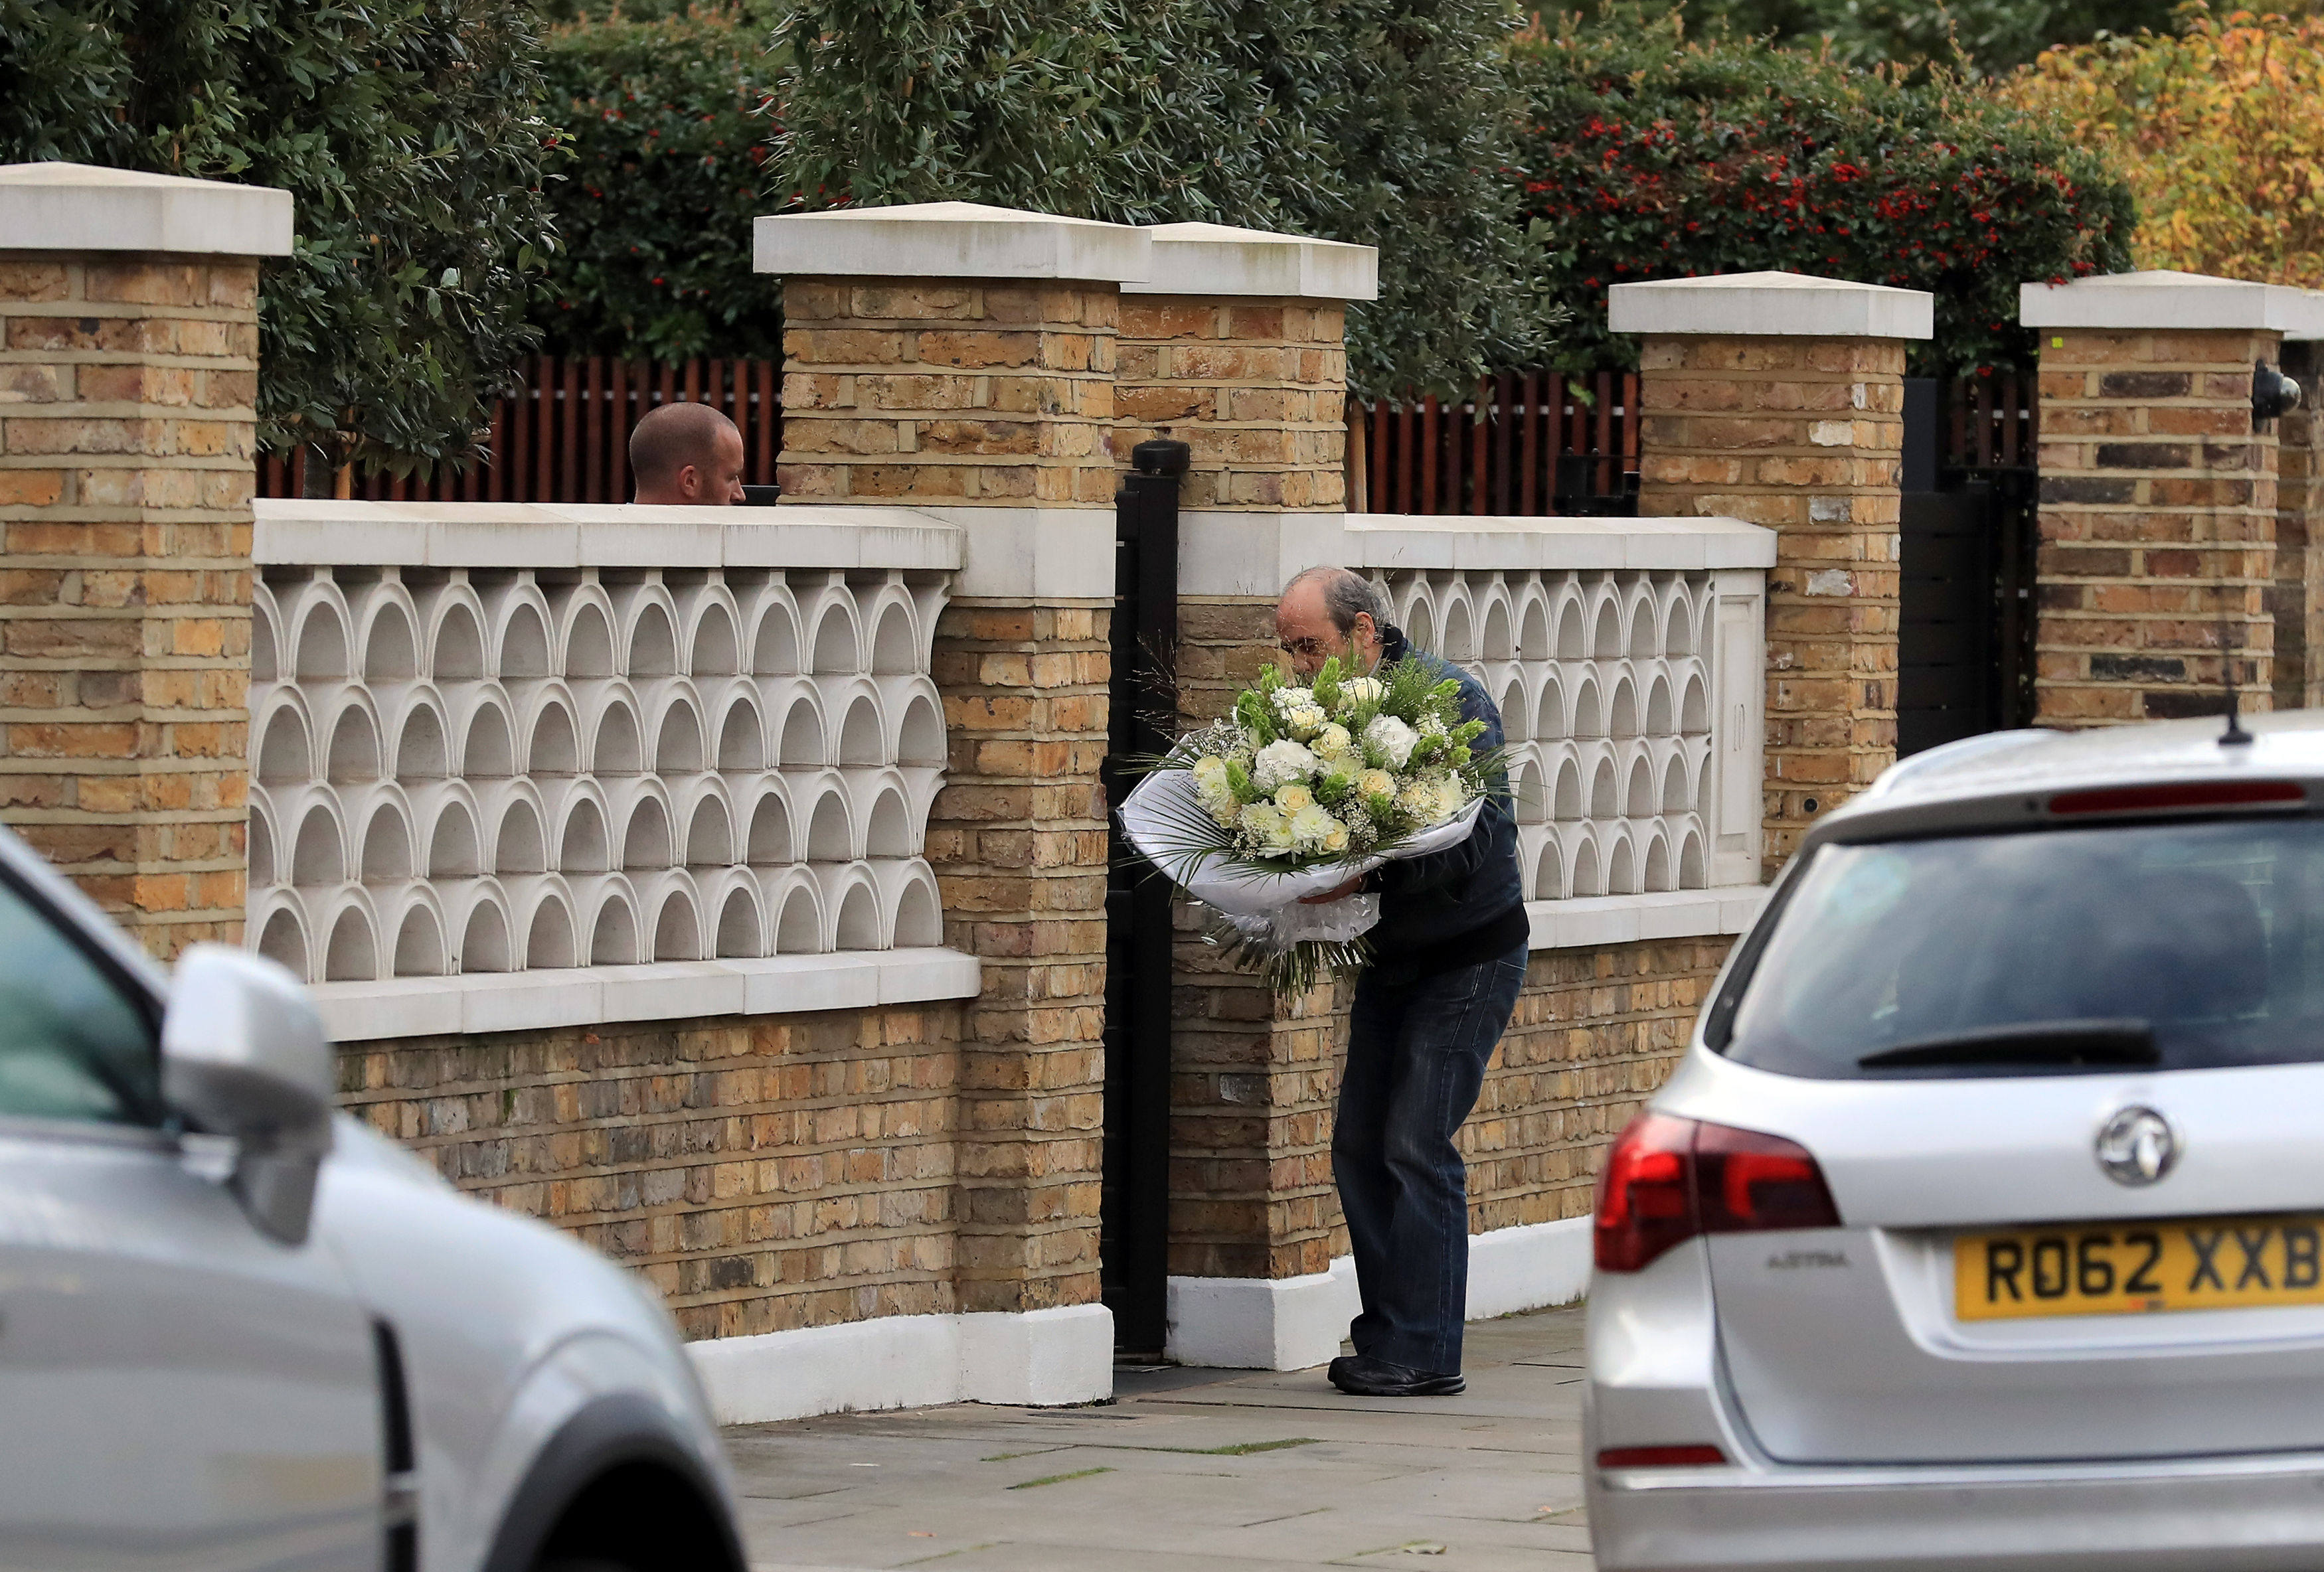 Des fleurs sont livrées au domicile de Simon Cowell, juge de X Factor, à Holland Park en 2018 | Source : Getty Images